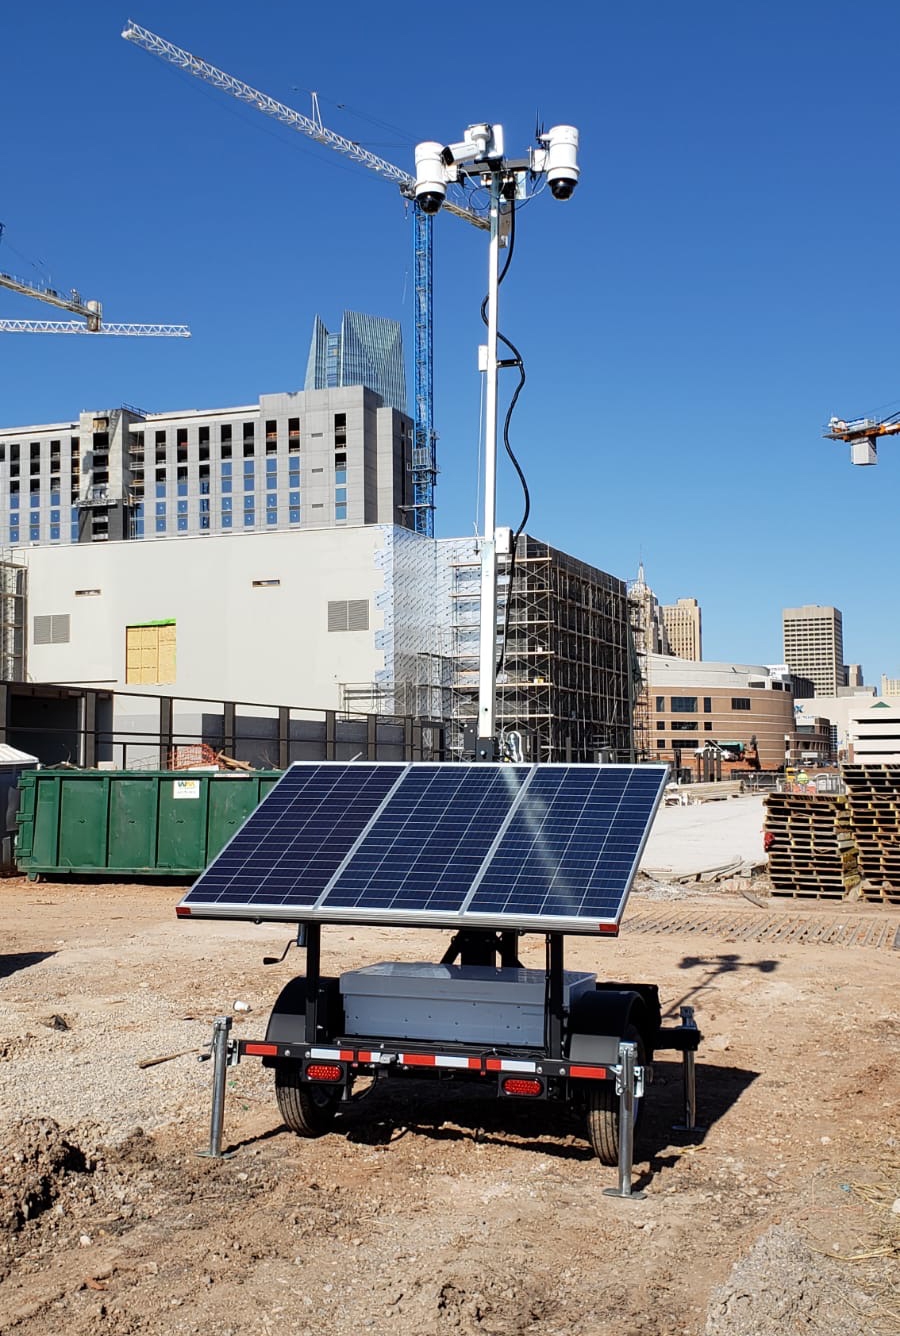 WCCTV Solar Surveillance Trailer - Construction Site Security System